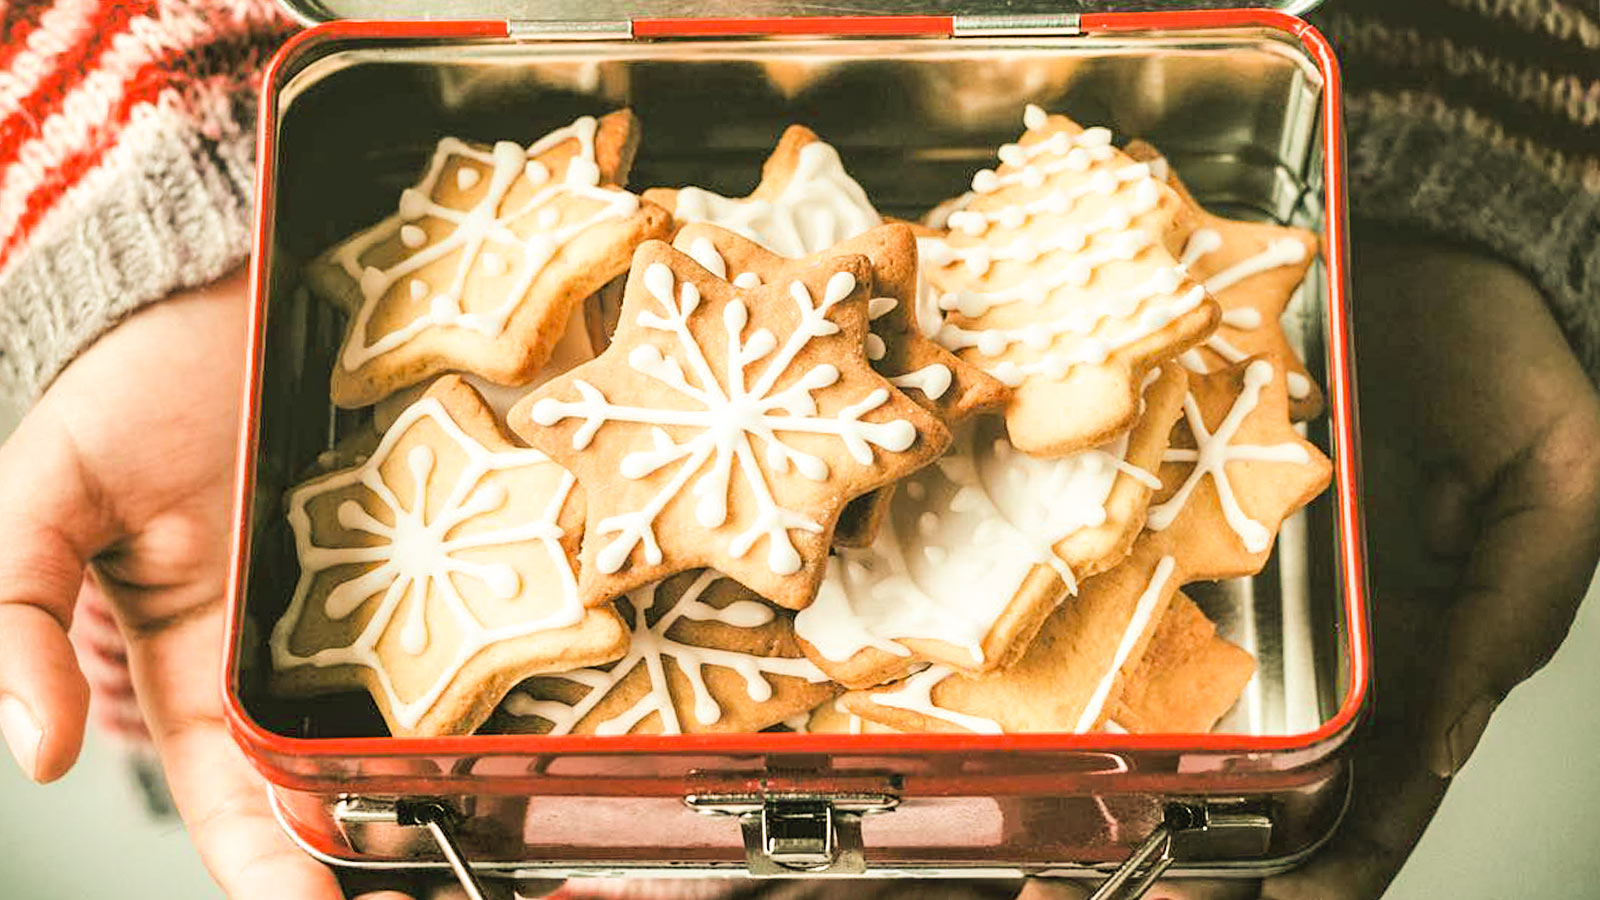 Biscotti Di Natale Glassati.Biscotti Di Natale Con Glassa Al Limone Gnamit Il Portale Delle Ricette